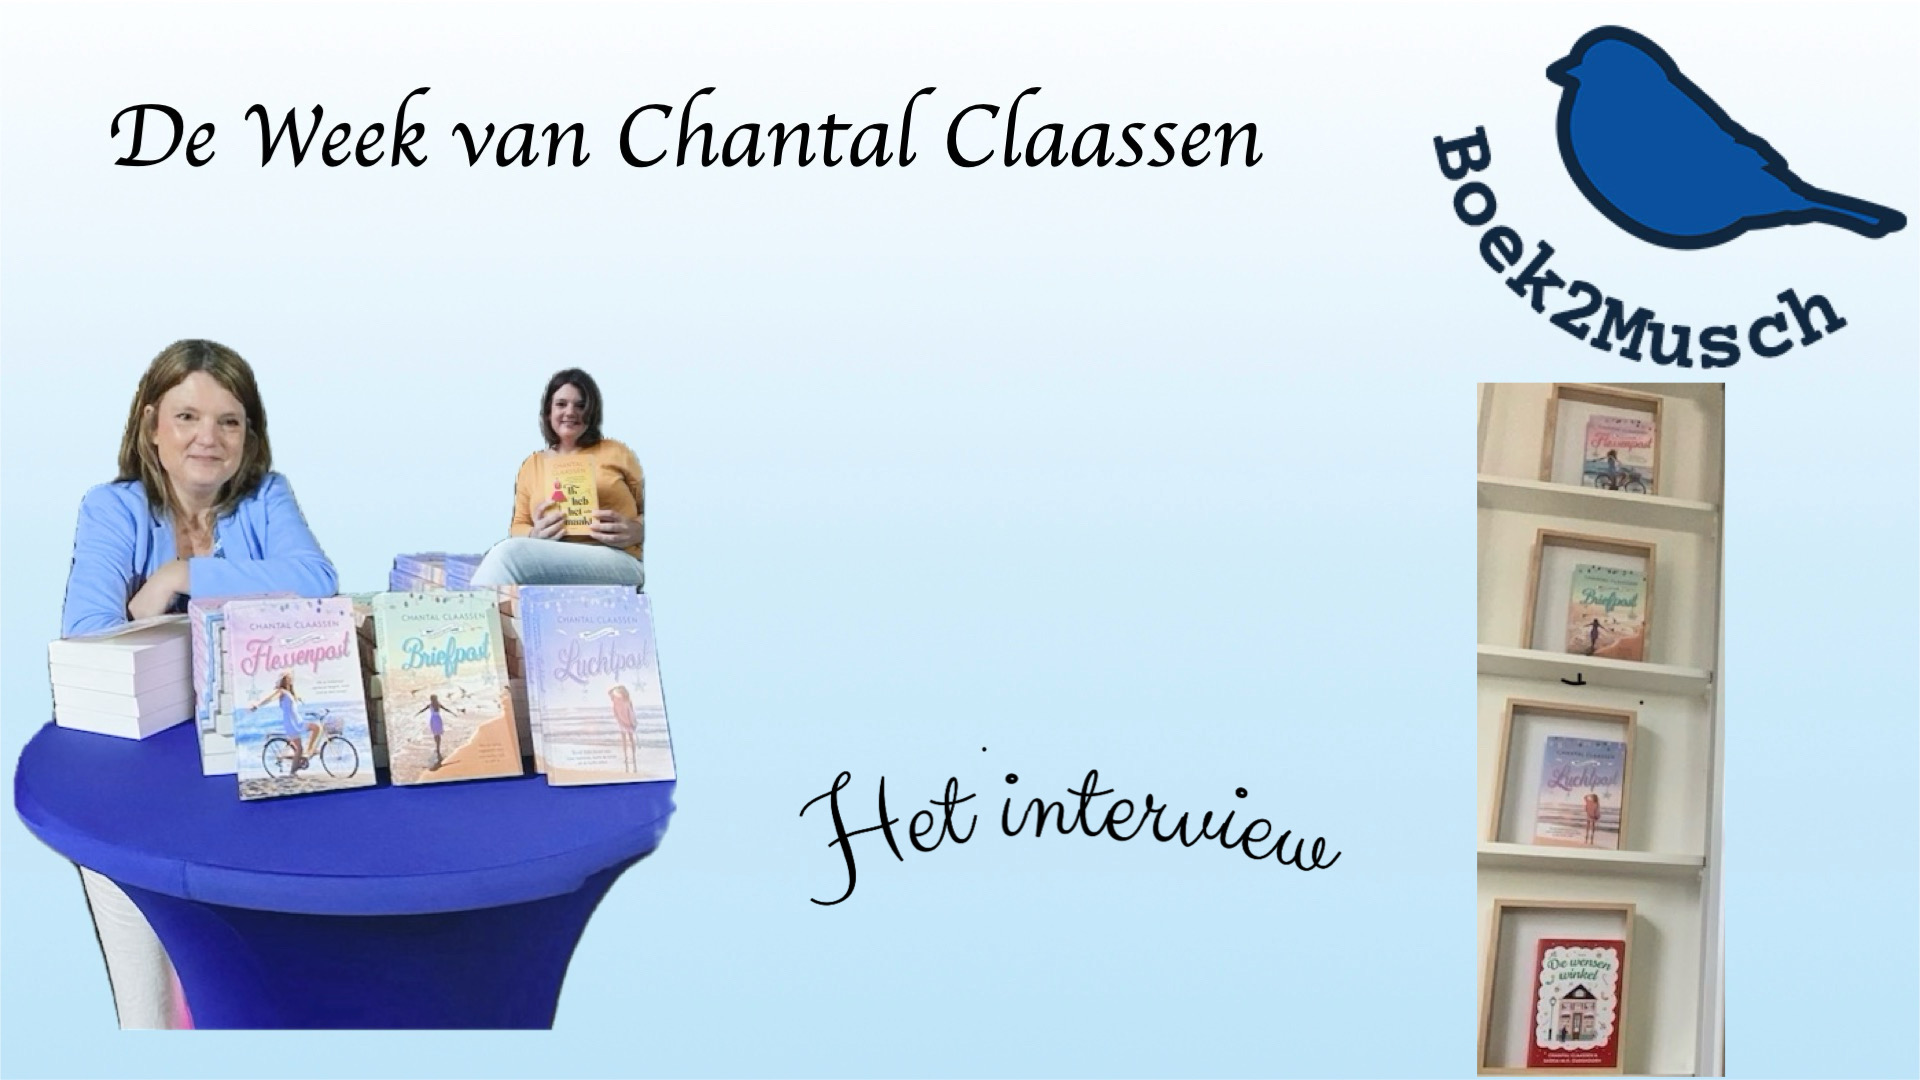 De Week van Chantal Claassen, het interview